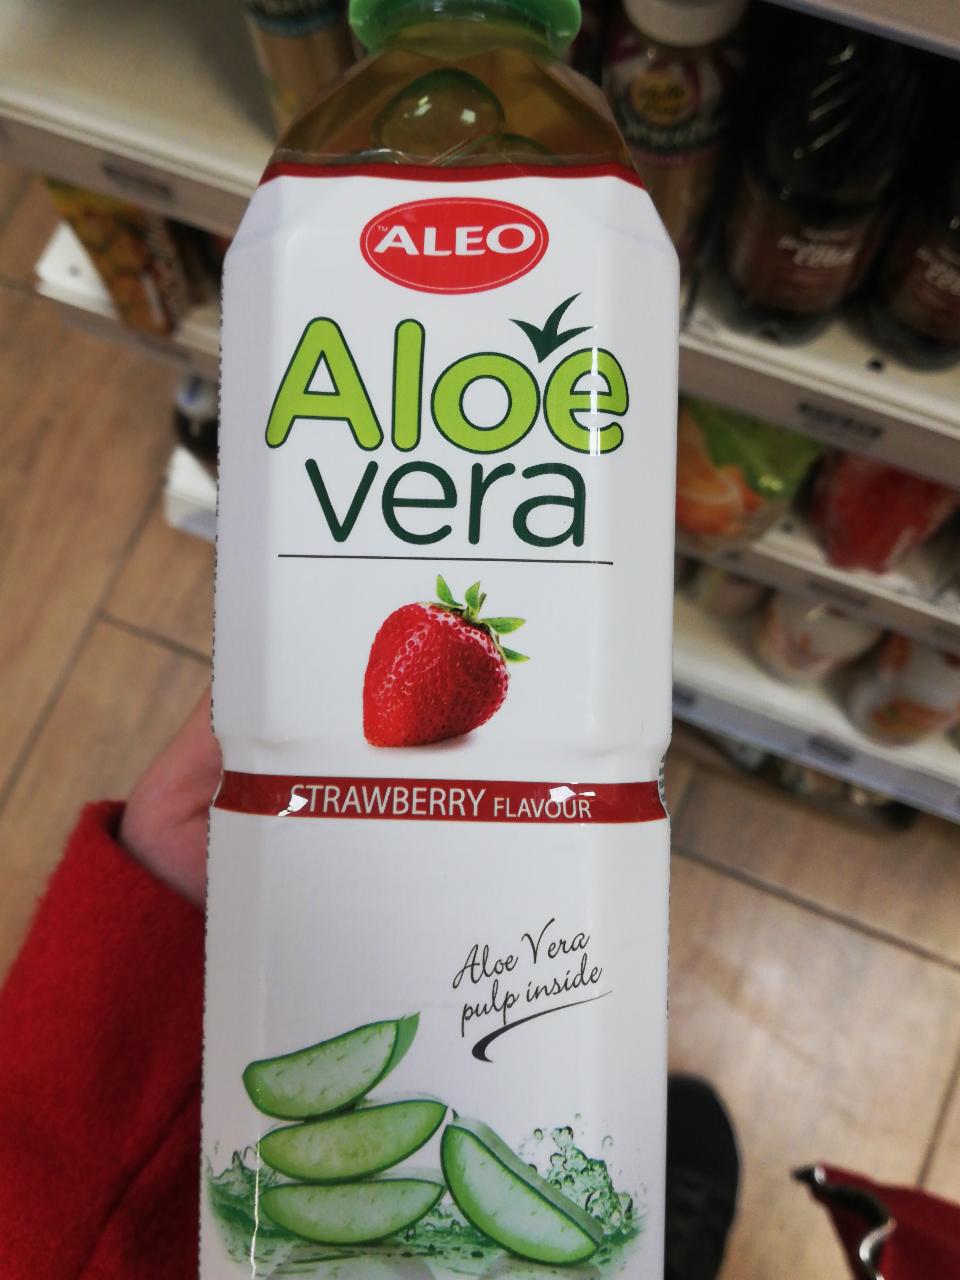 Képek - Aloe Vera ital eper ízű Aleo